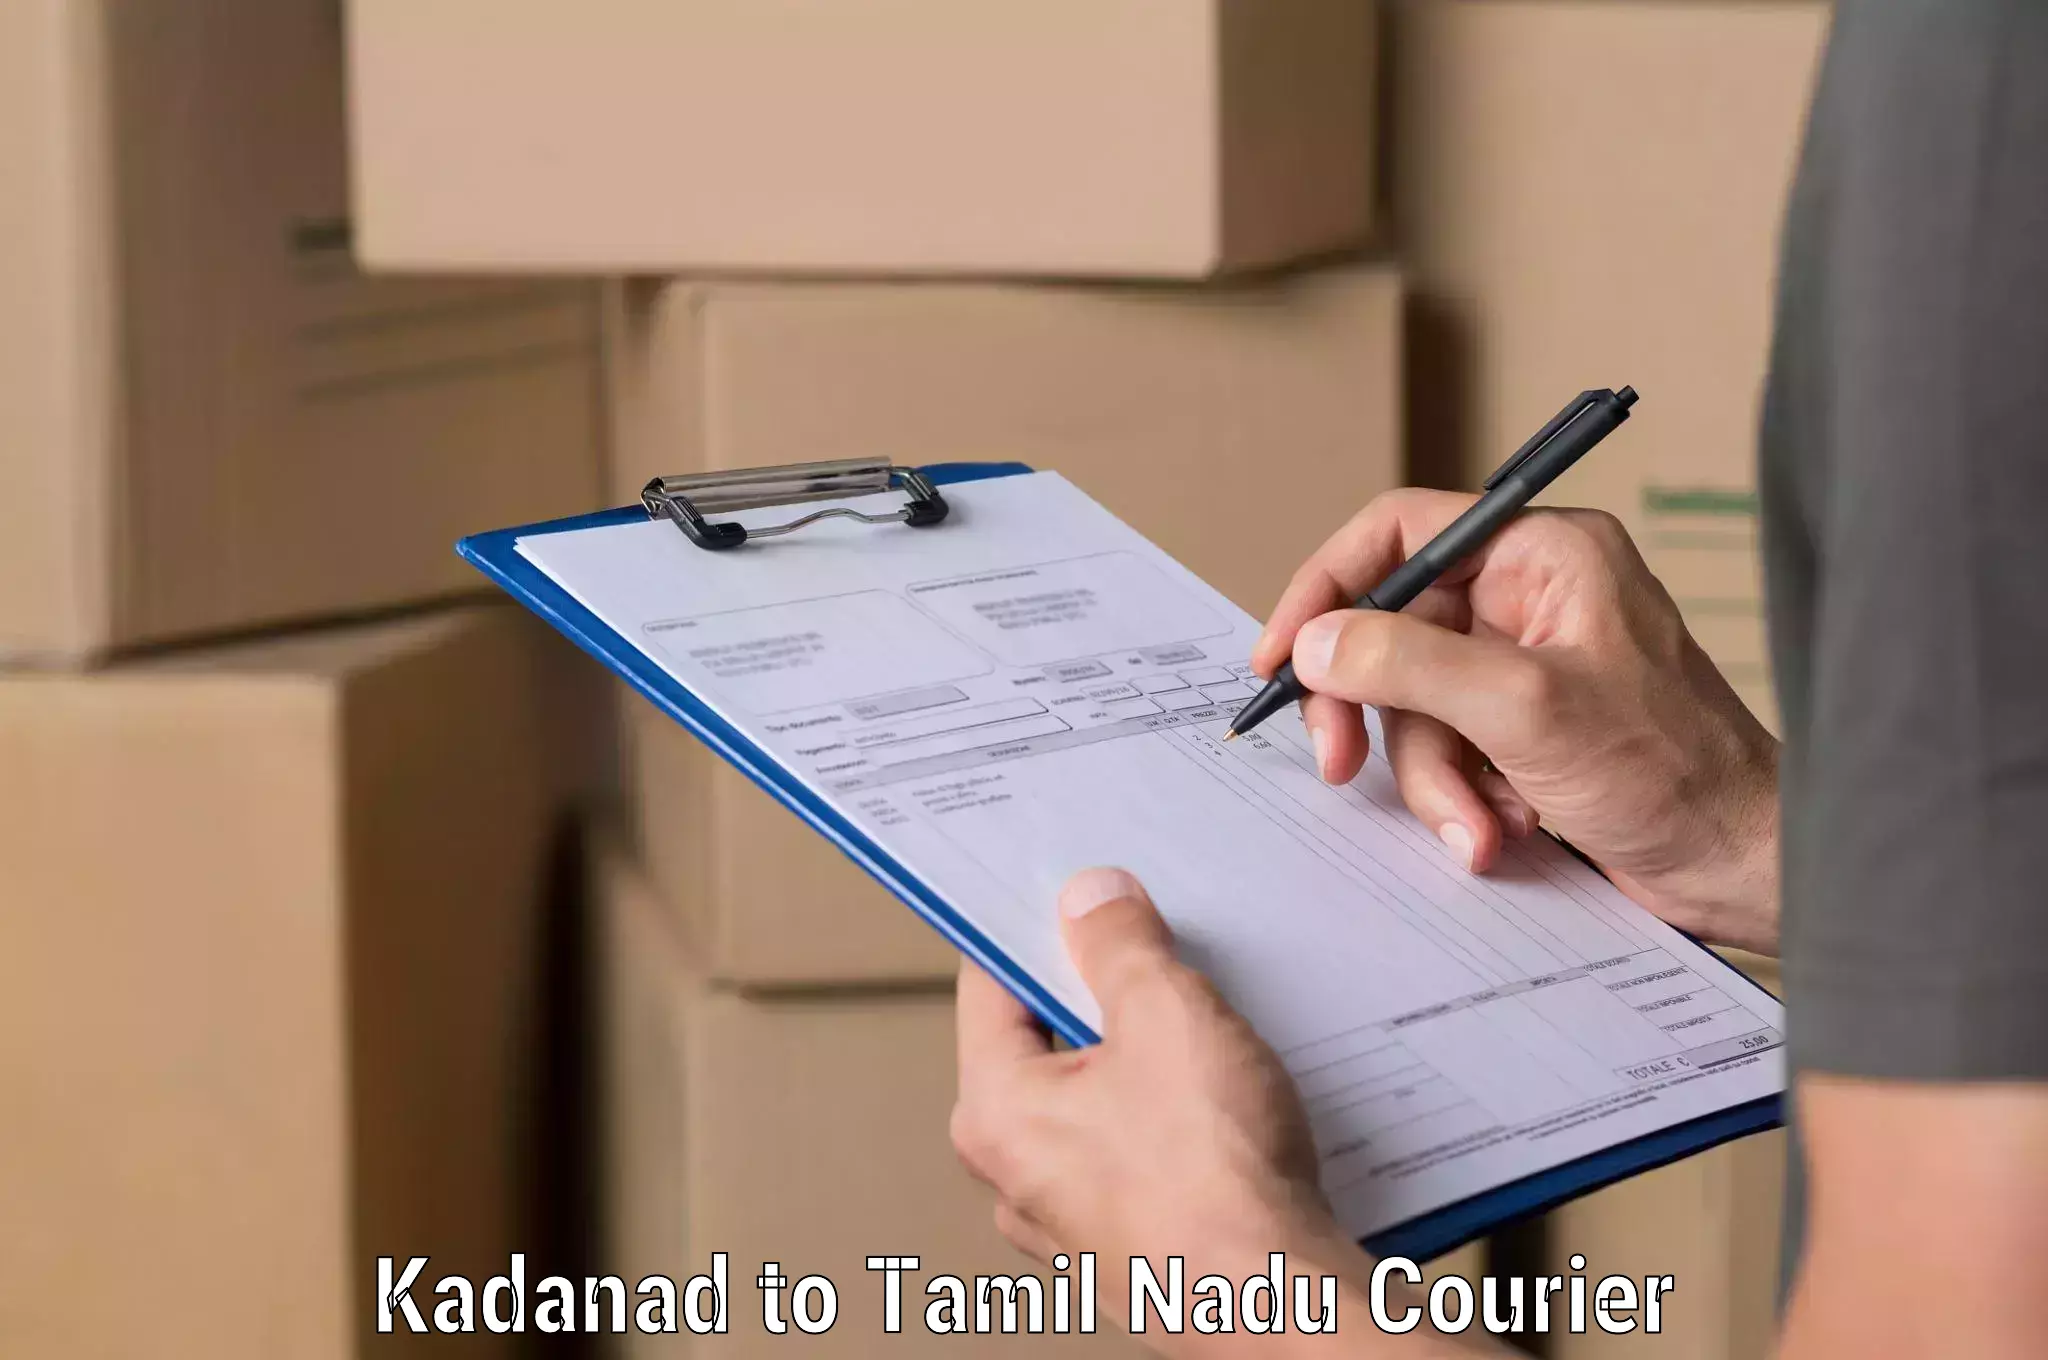 Express package handling Kadanad to Kalpakkam